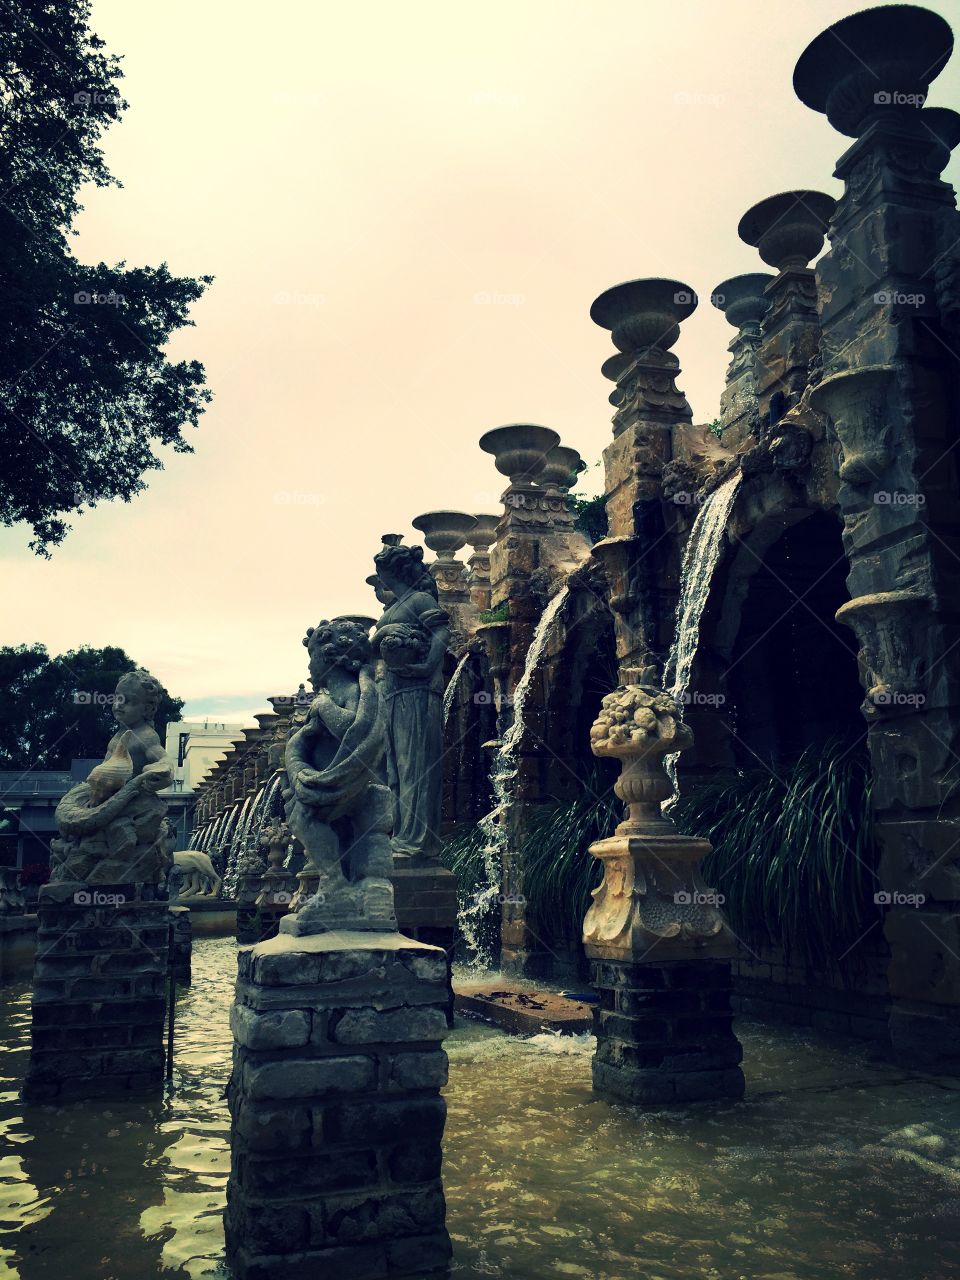 Kapok Fountains